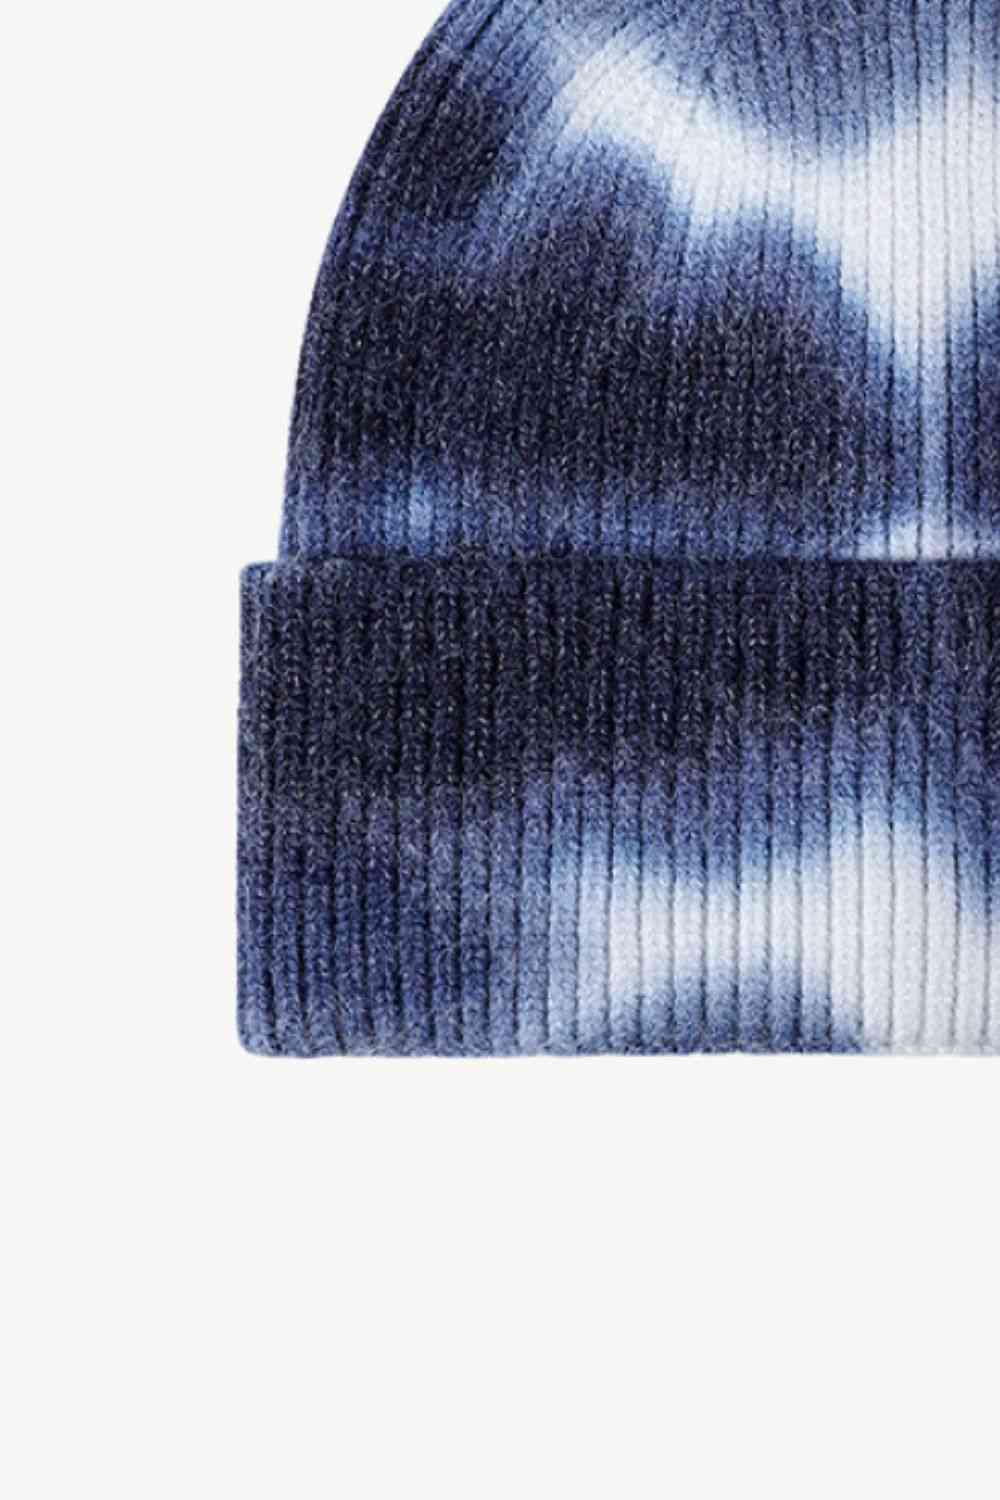 CHIC HATZ Tie-Dye Hat Cuffed Knit Beanie